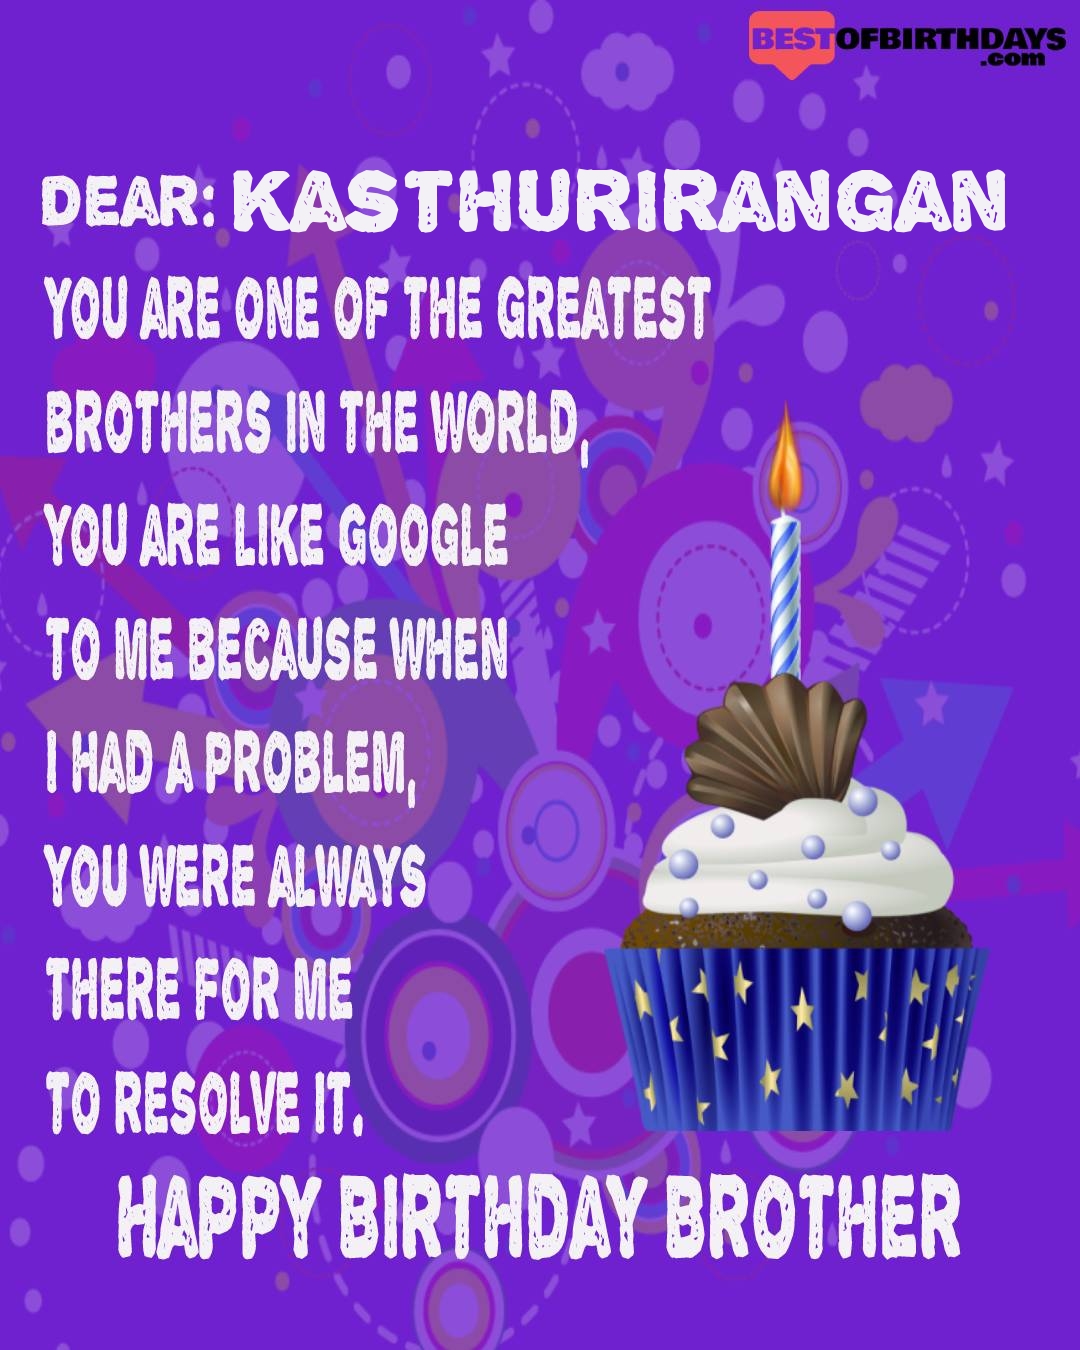 Happy birthday kasthurirangan bhai brother bro